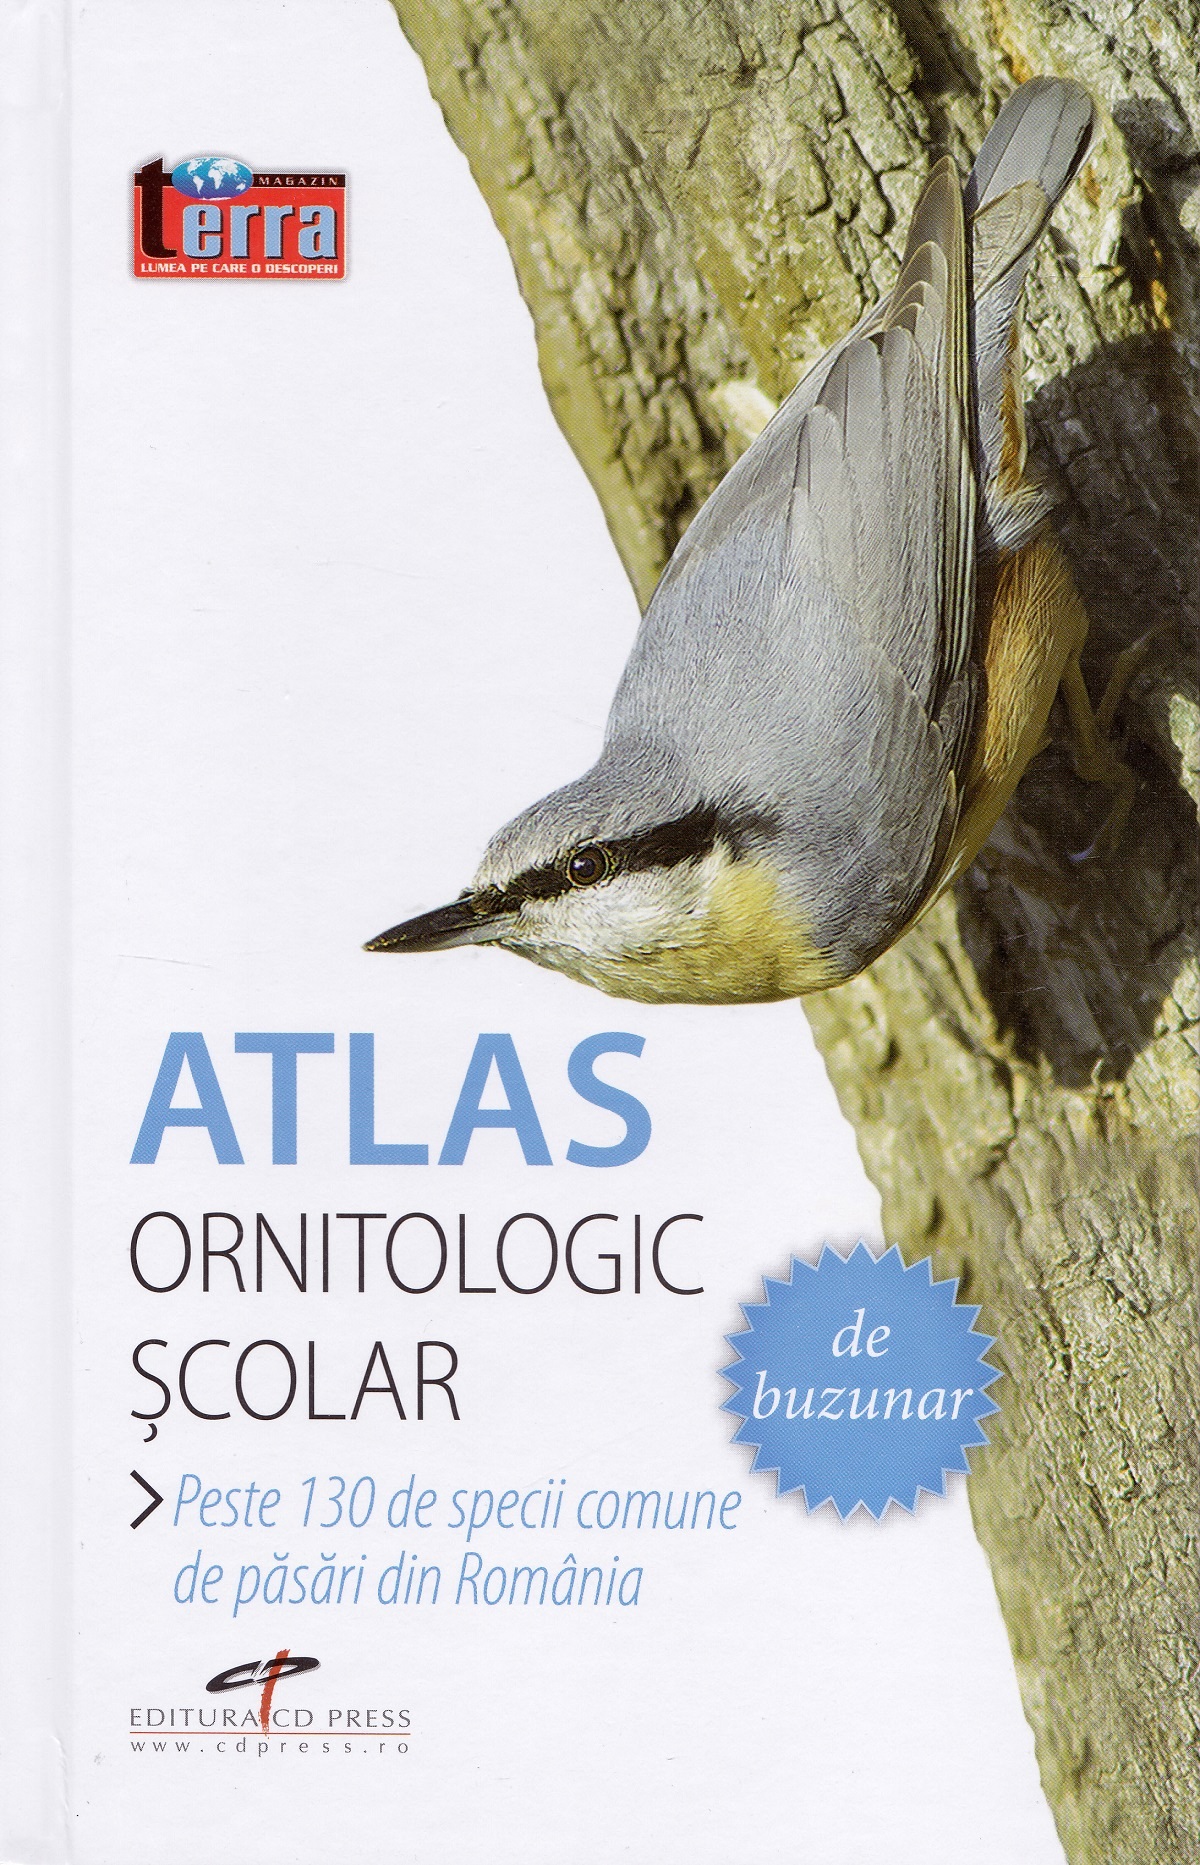 Atlas ornitologic scolar